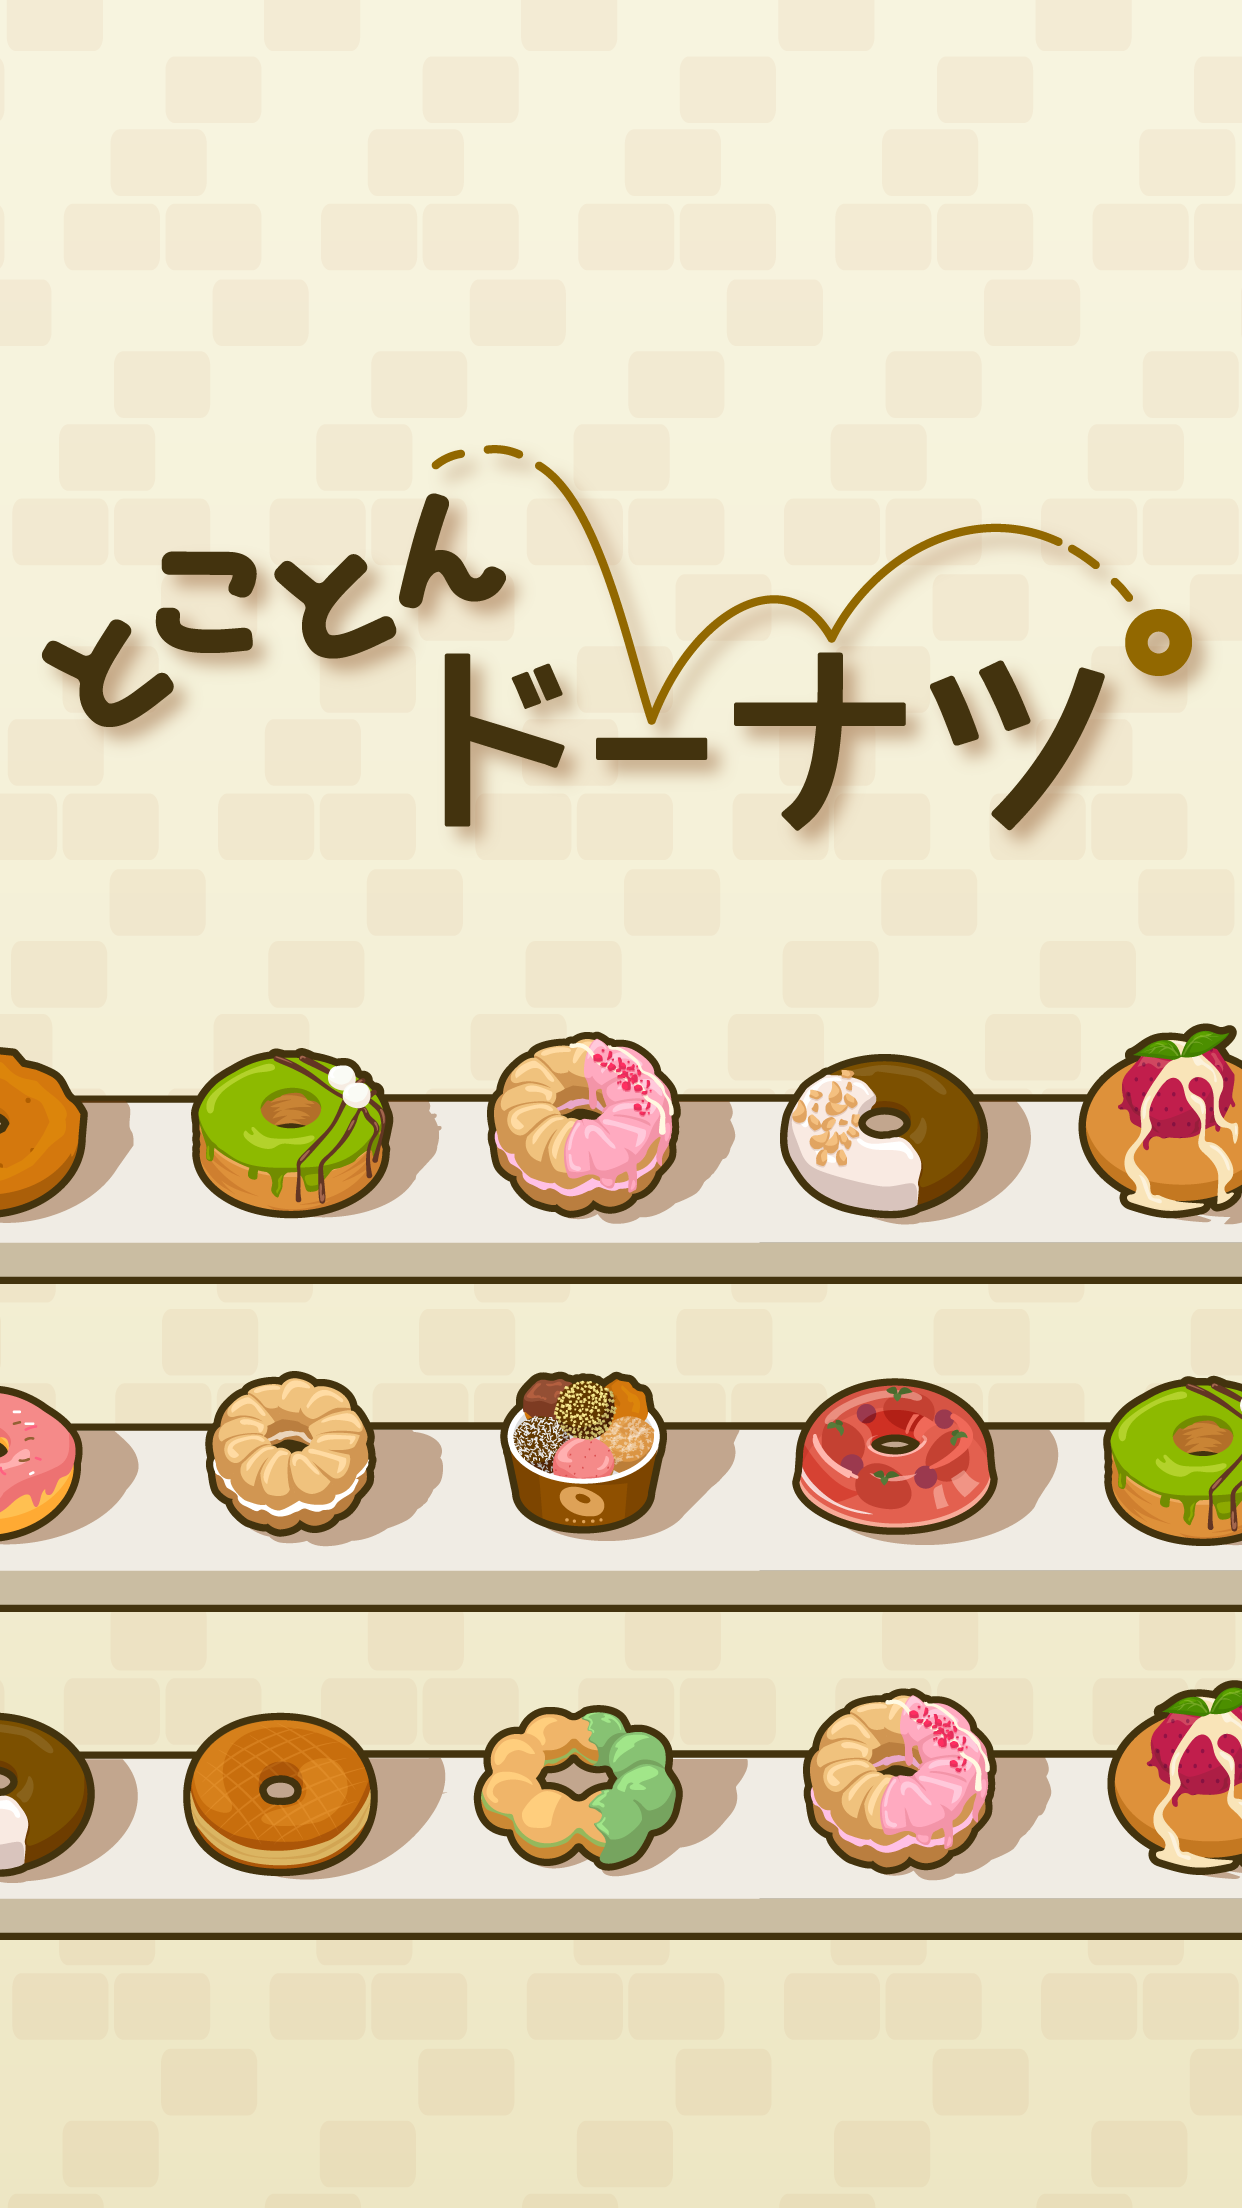 Screenshot 1 of Donuts triệt để -Trò chơi chữa bệnh tăng lên bằng cách bỏ bê 2.6.0